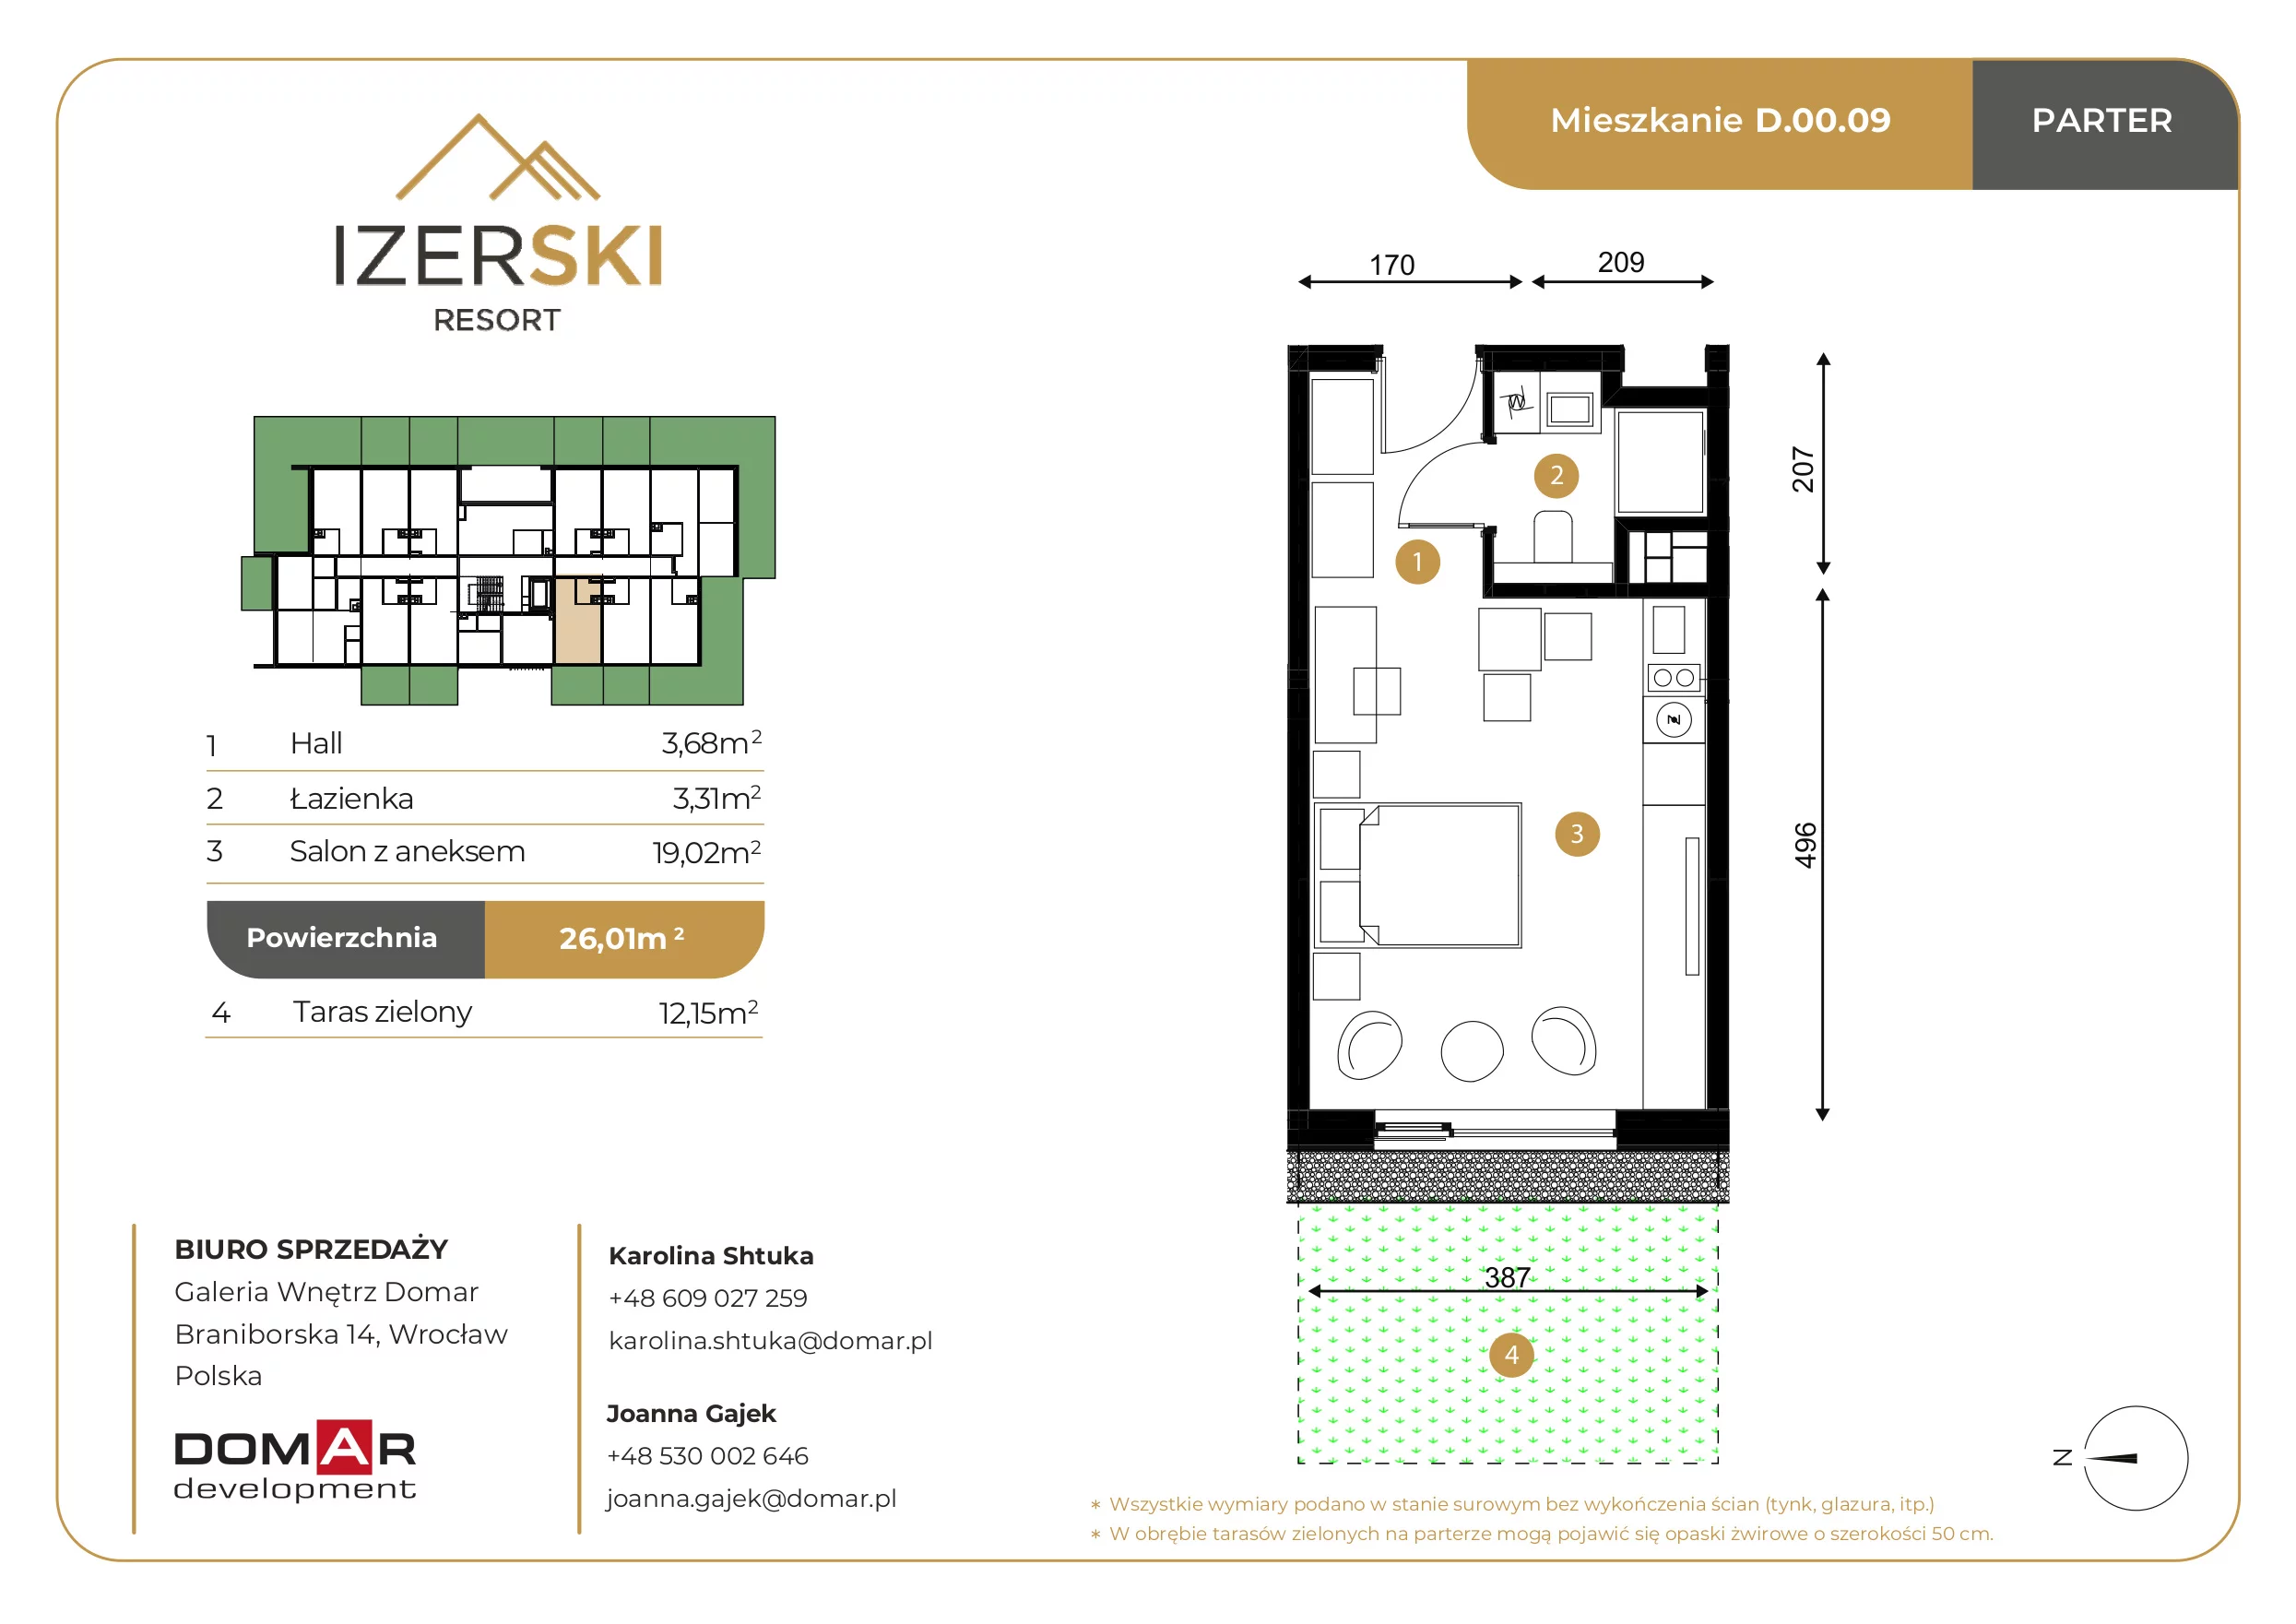 Apartament inwestycyjny 26,01 m², parter, oferta nr D.00.09, IzerSKI Resort, Świeradów-Zdrój, ul. Jana Kilińskiego 2